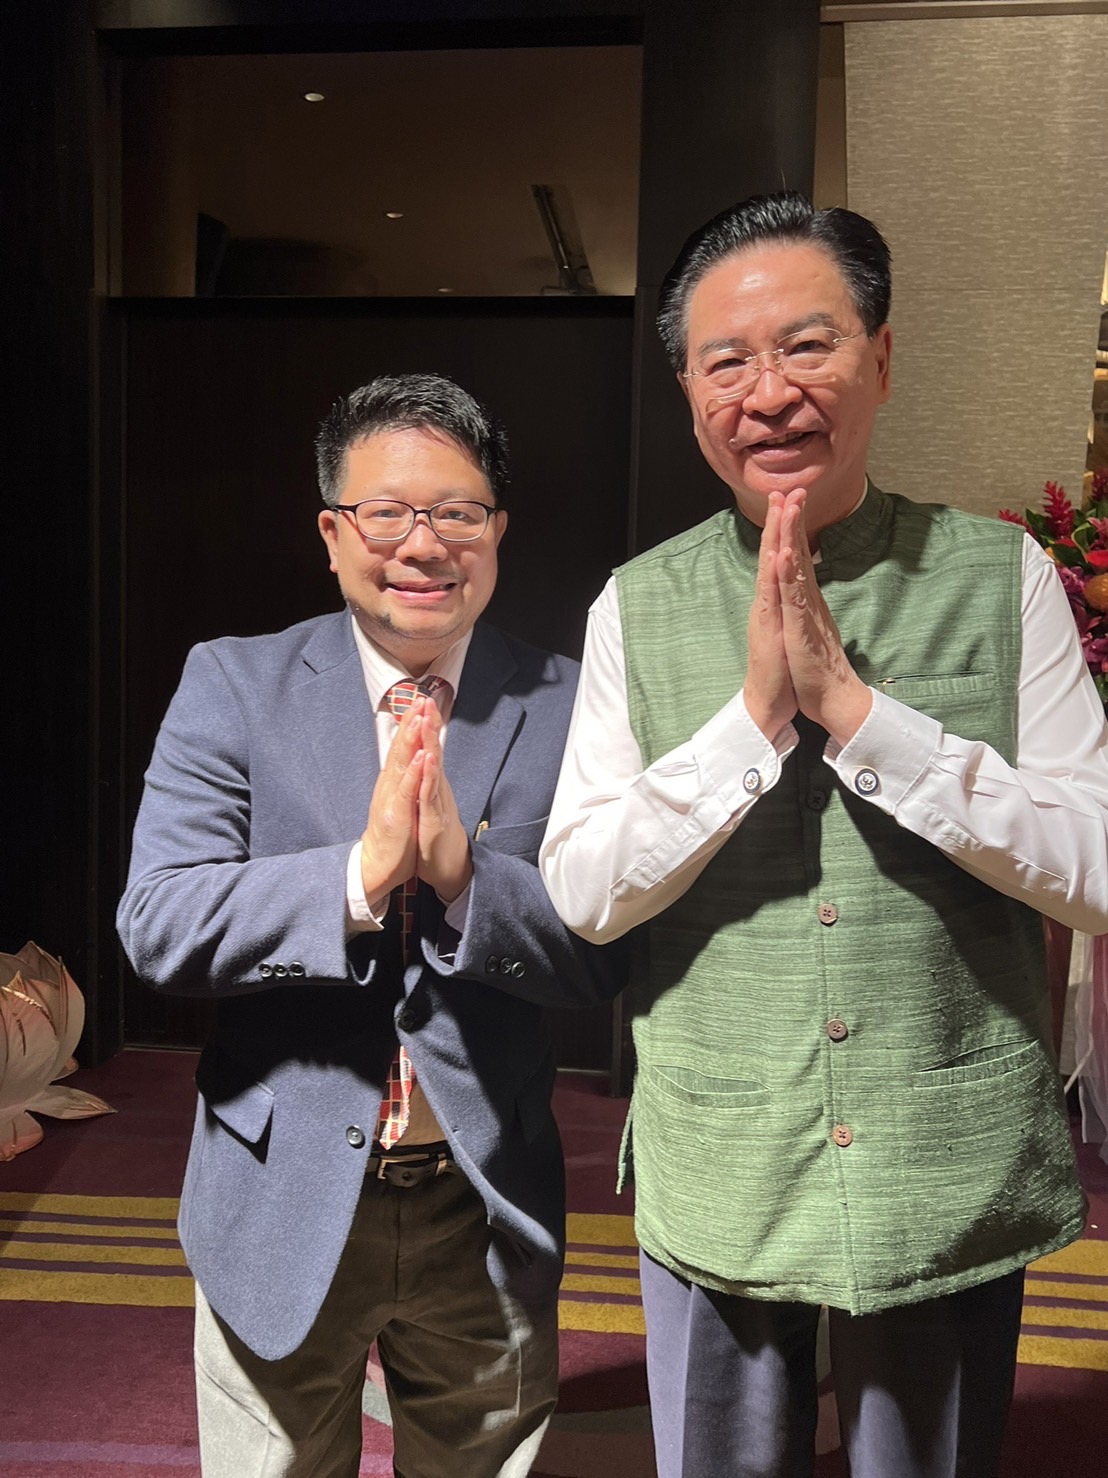 「 印 度 排 燈 節 」 在 台 灣 已 邁 入 第 四 屆 ， 感 謝 外 交 部 的 支 持 。 （ 圖 右 為 吳 釗 燮 外 交 部 長 ） 